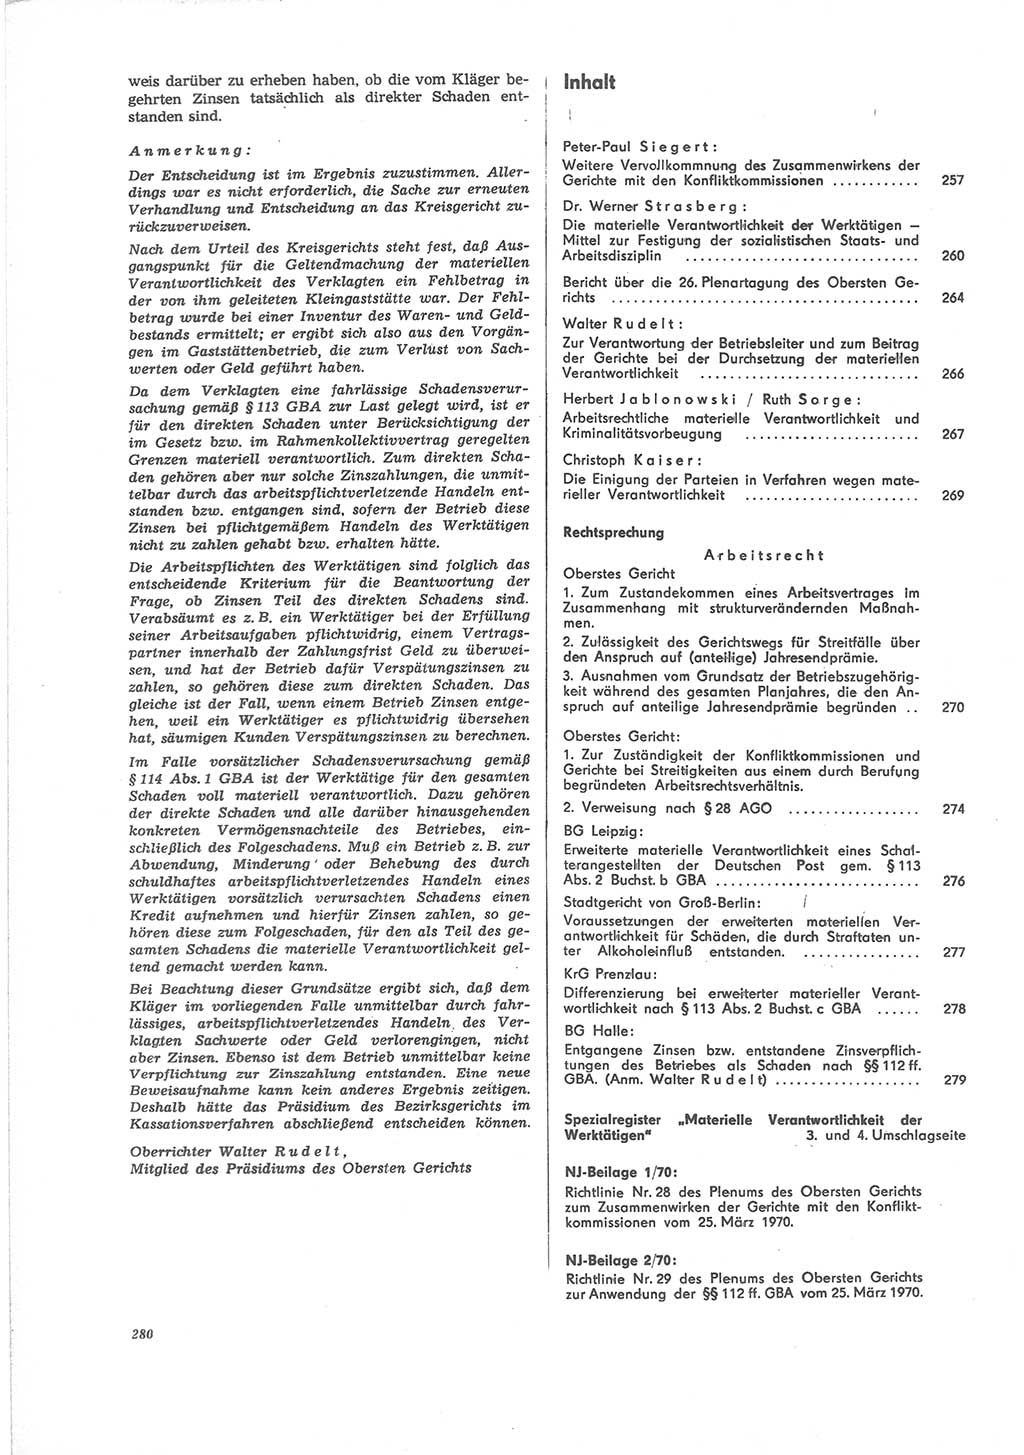 Neue Justiz (NJ), Zeitschrift für Recht und Rechtswissenschaft [Deutsche Demokratische Republik (DDR)], 24. Jahrgang 1970, Seite 280 (NJ DDR 1970, S. 280)